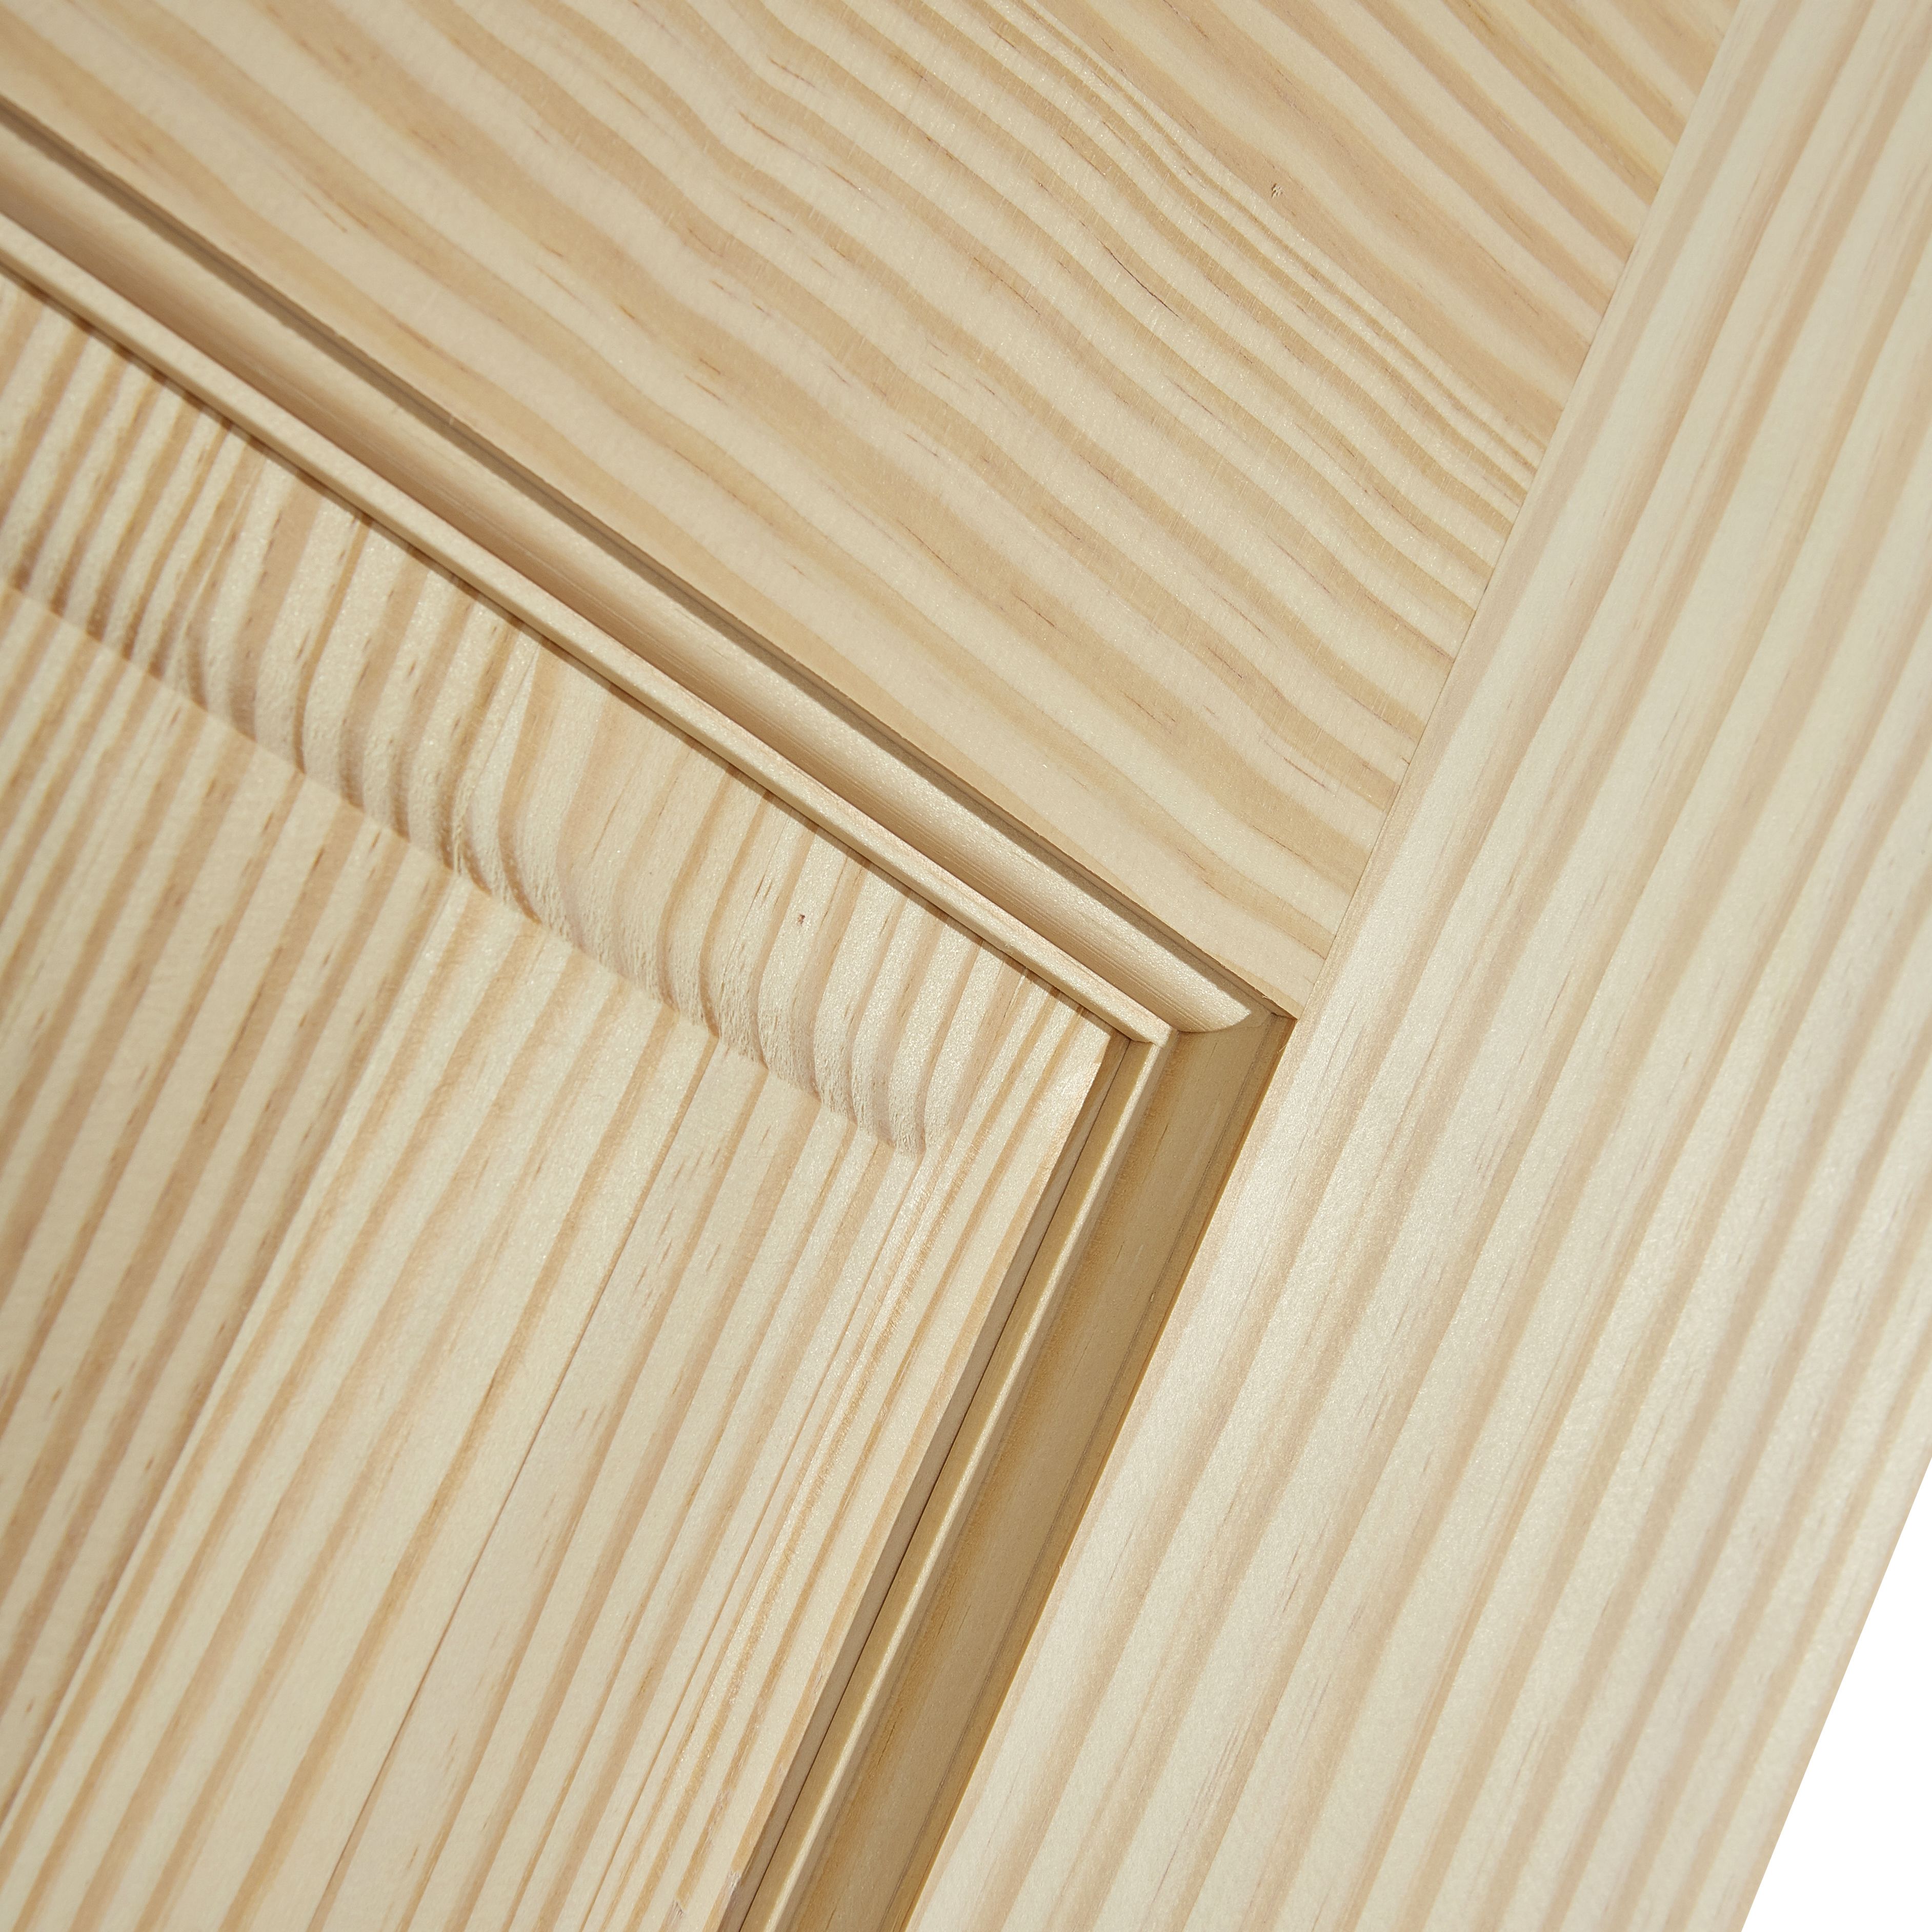 2 panel Unglazed Contemporary Pine veneer Internal Clear pine Door, (H)1981mm (W)838mm (T)35mm